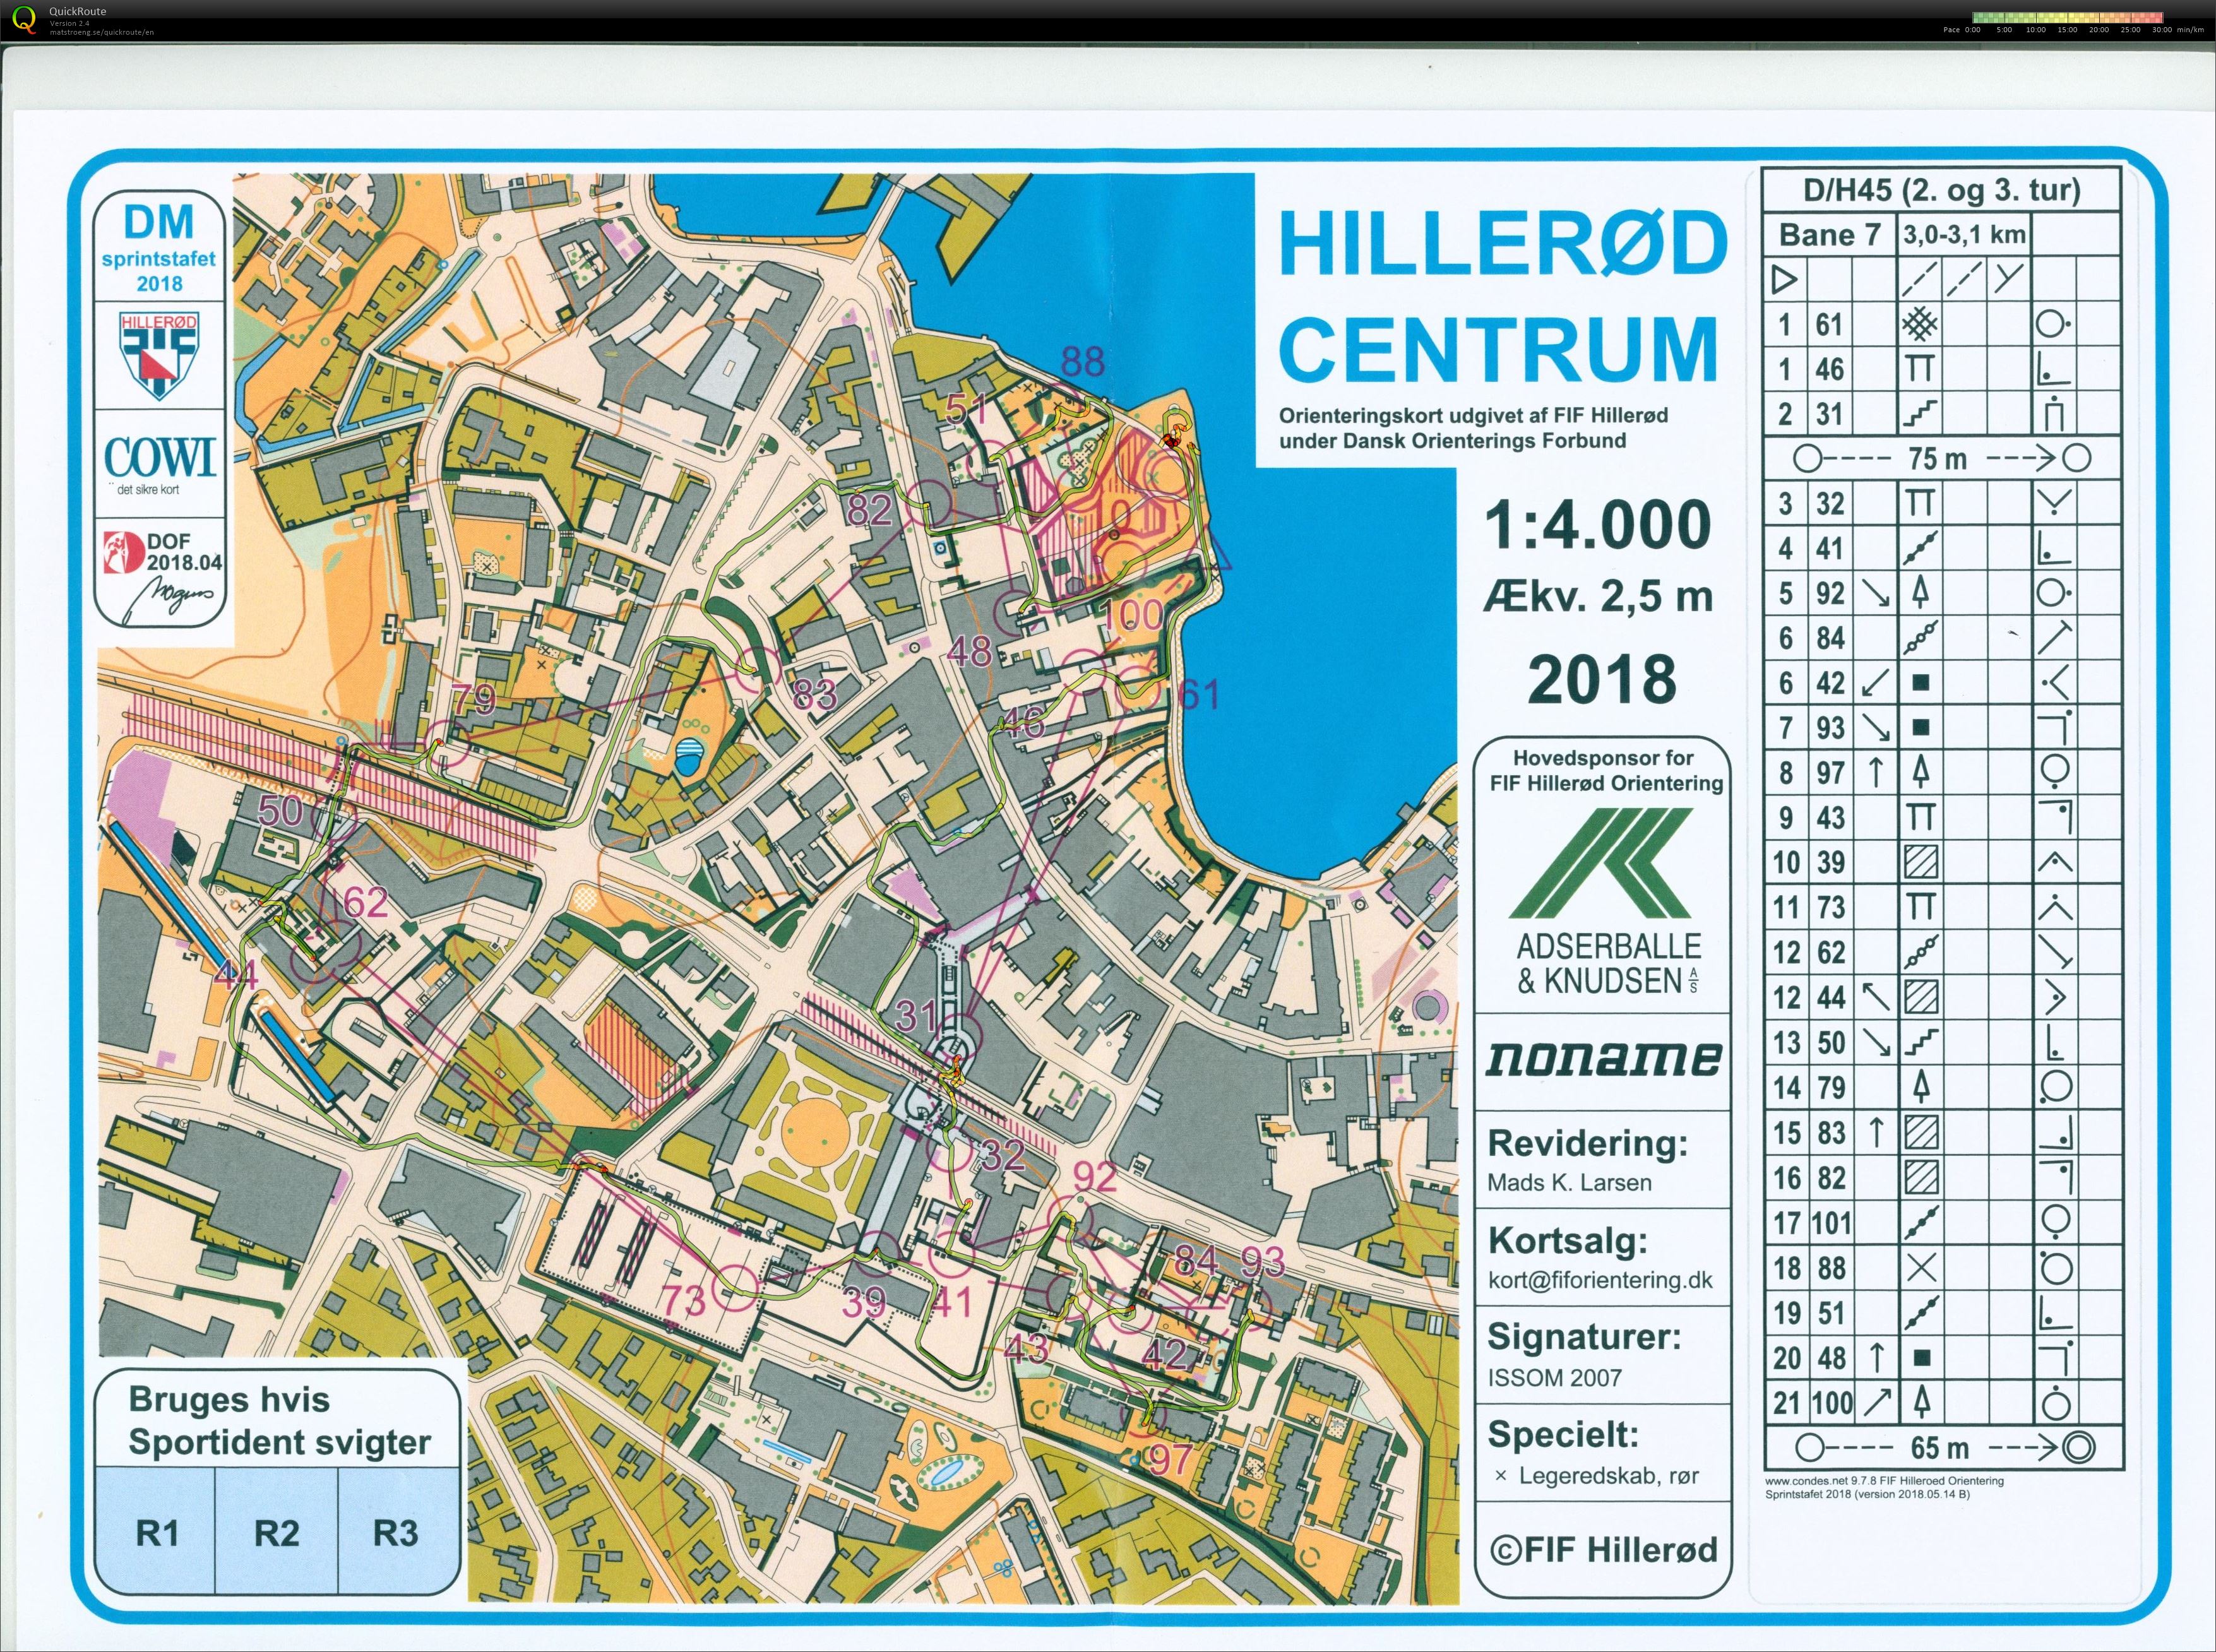 Hillerød sprint stafet D/H45 (2018-05-27)